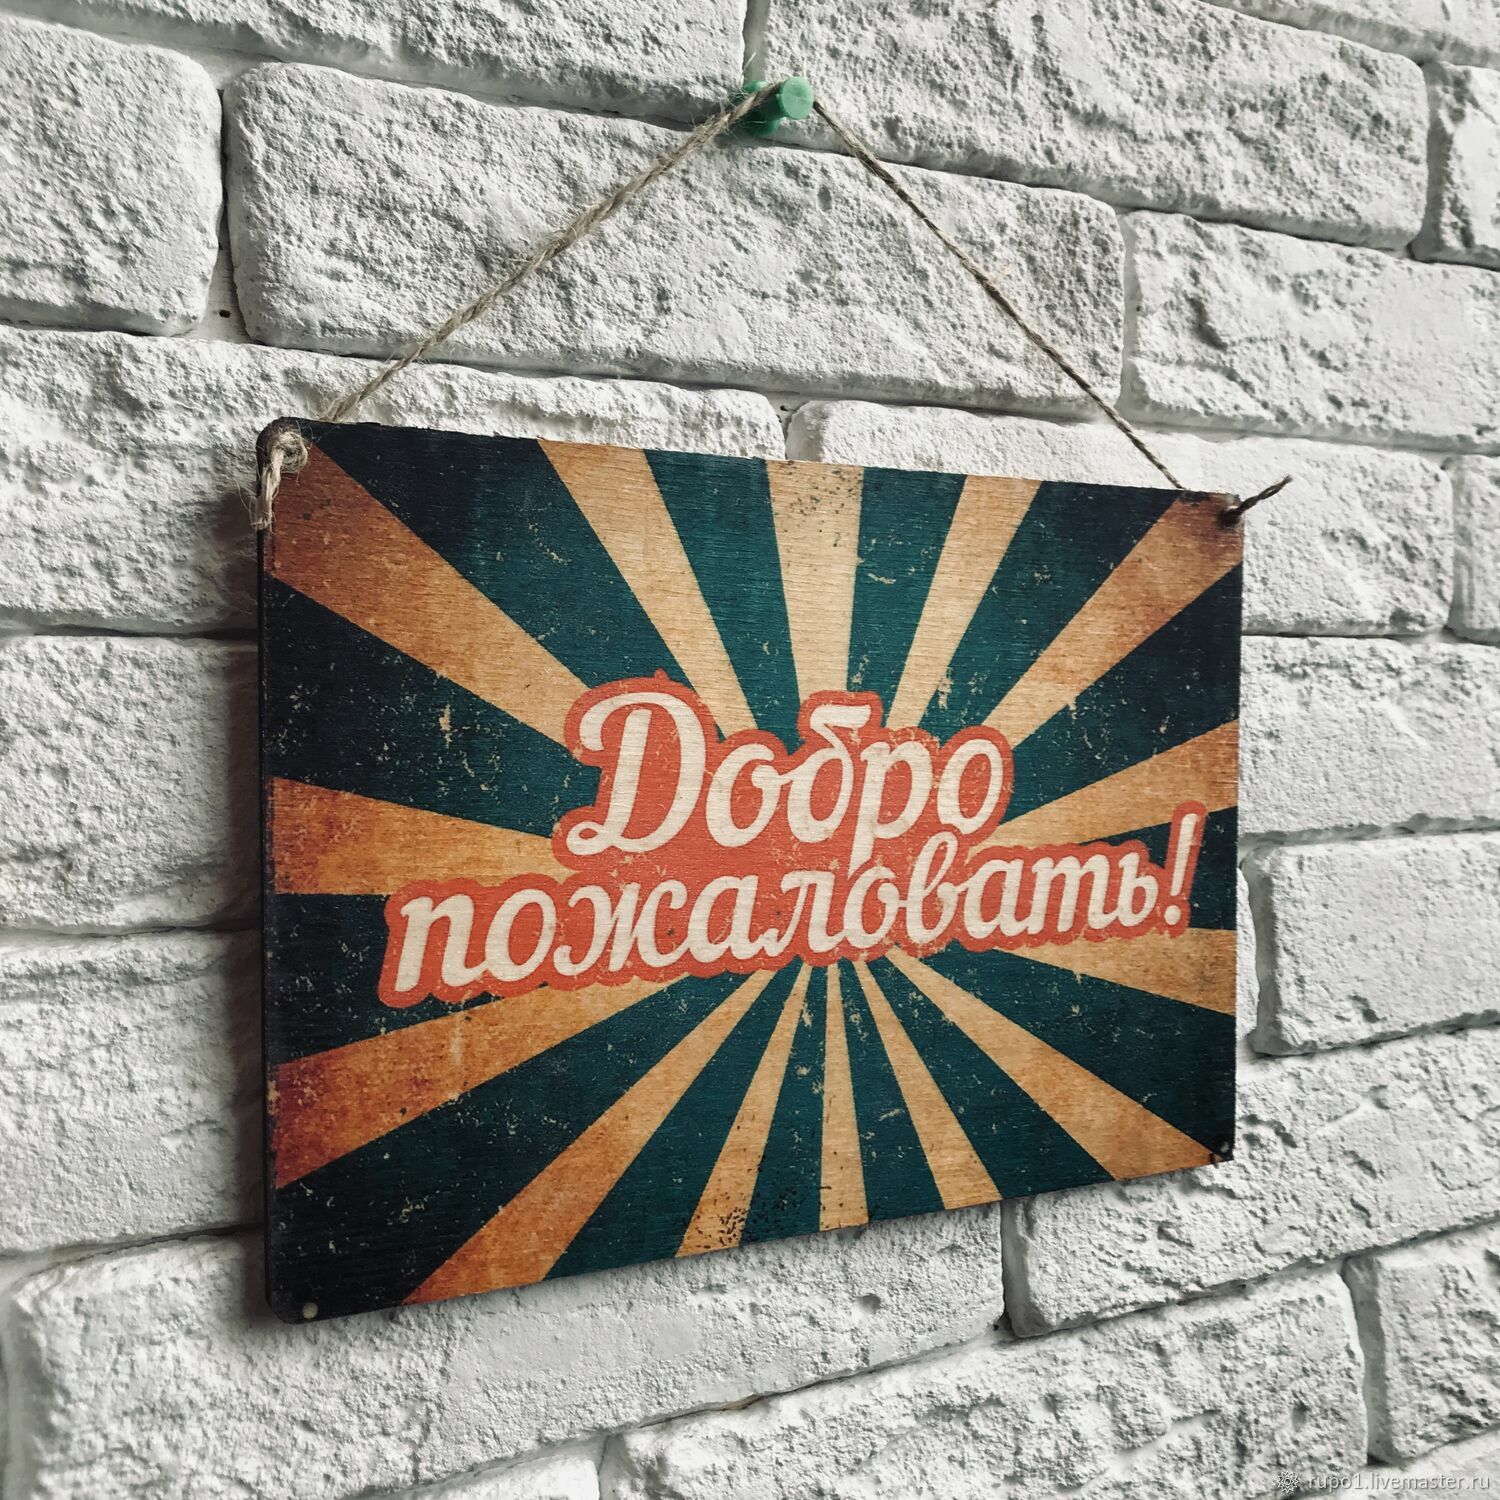 Постеры на русском